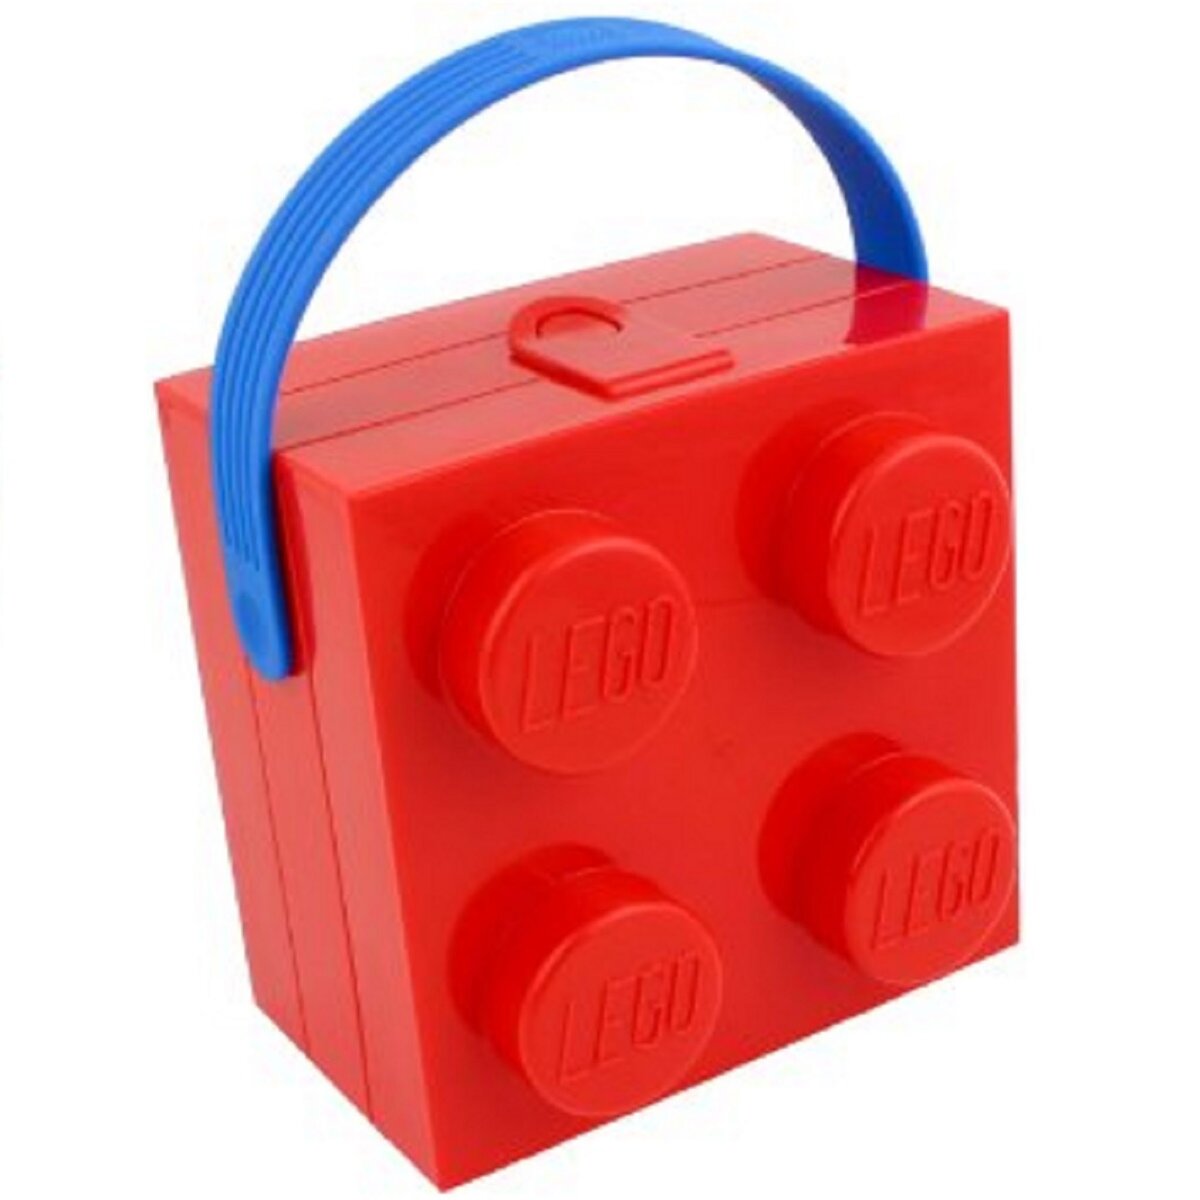 Boite Lego rouge